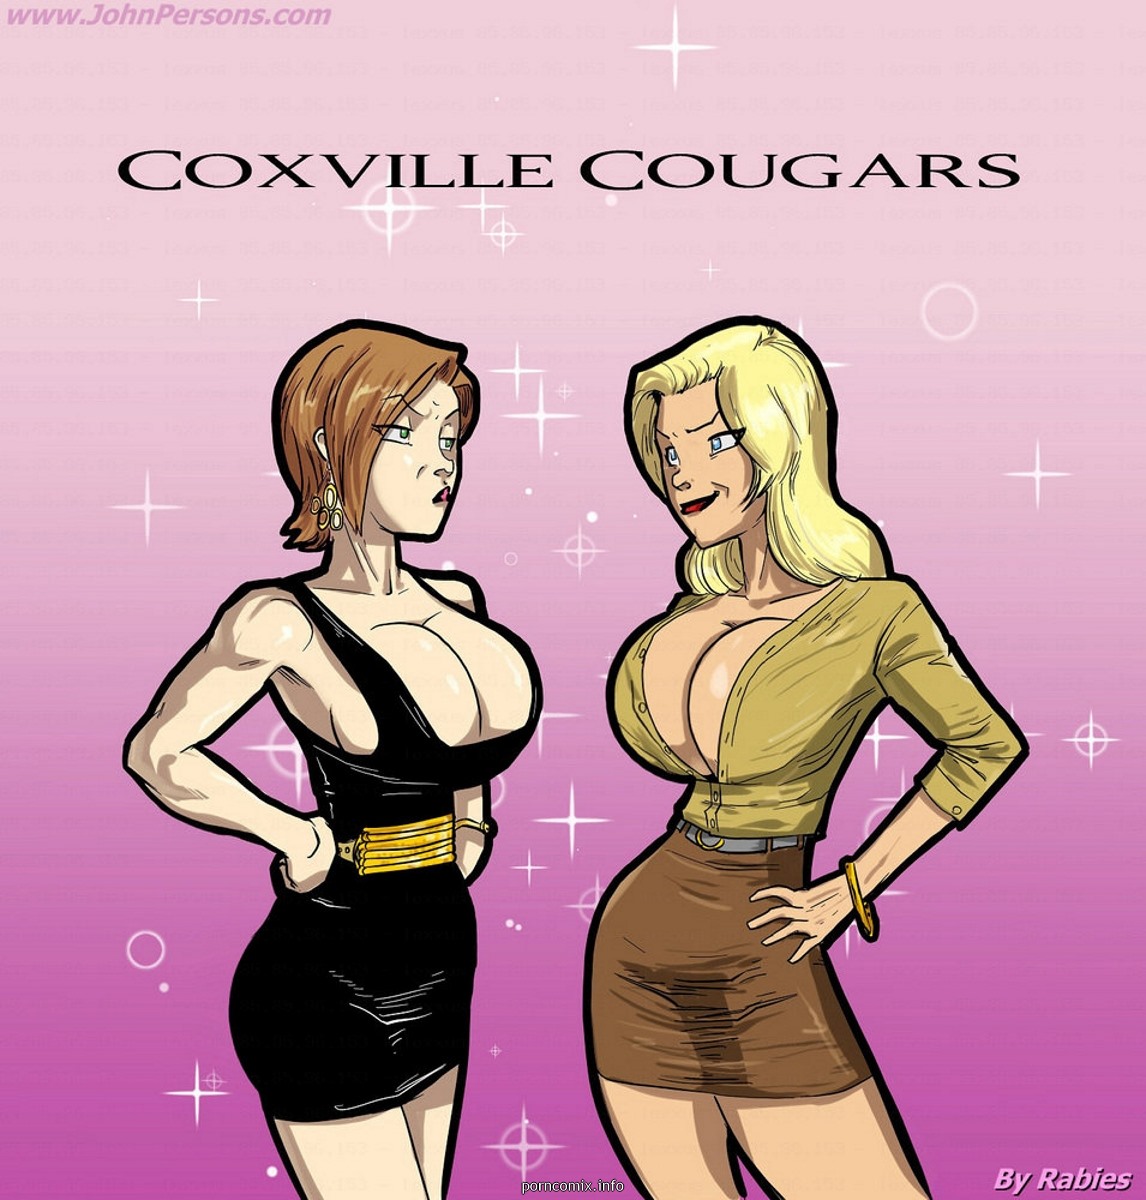 Porn Comics - Coxville Cougars- John Persons porn comics 8 muses